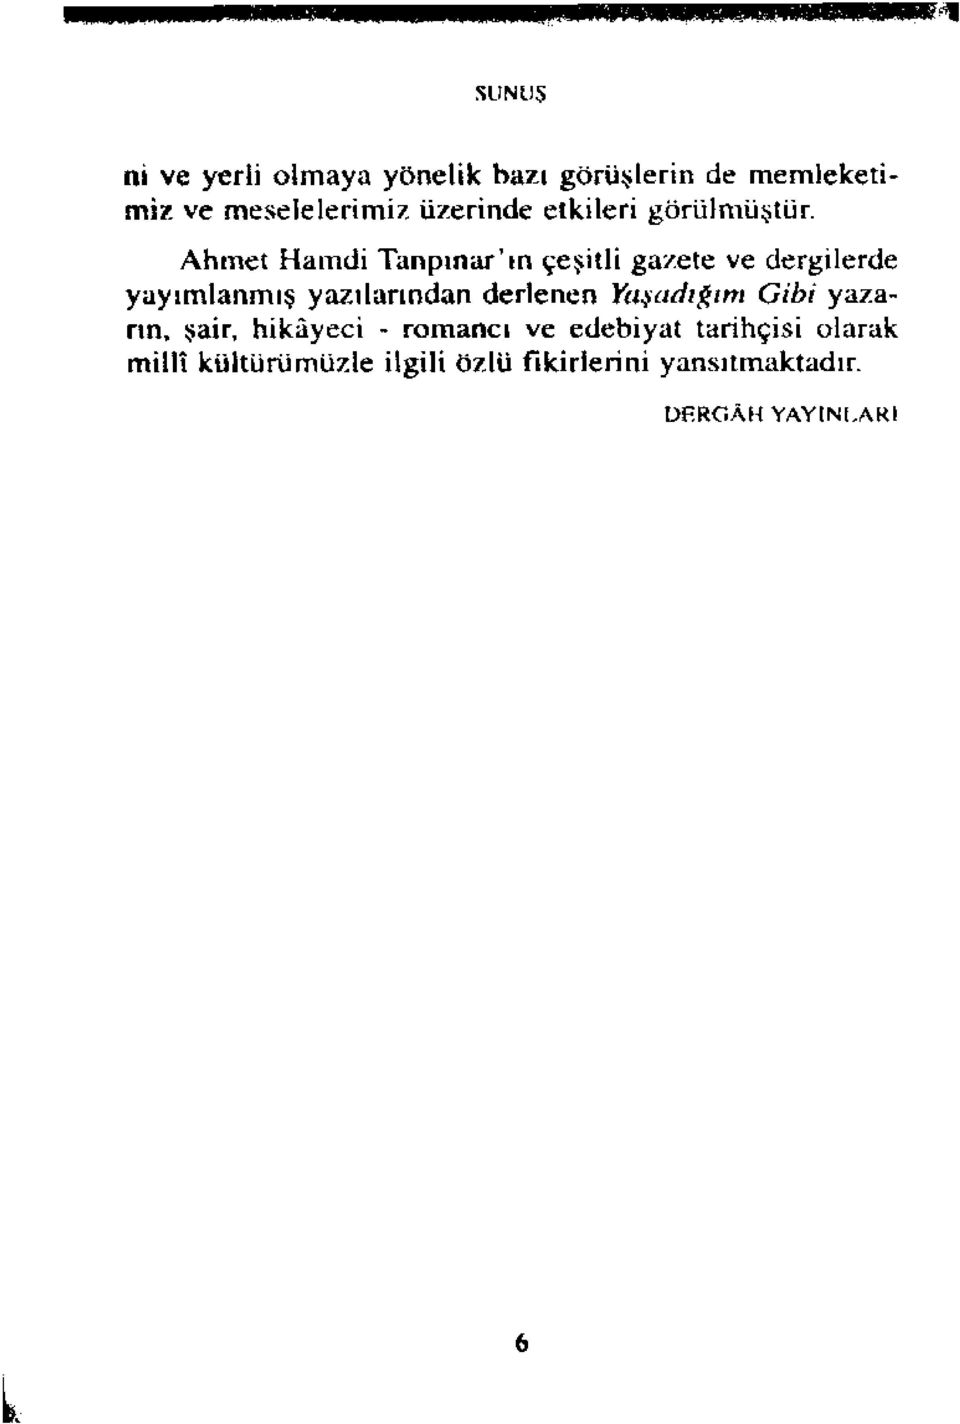 Ahmet Hamdi Tanpınar'ın çeşitli gazete ve dergilerde yayımlanmış yazılarından derlenen